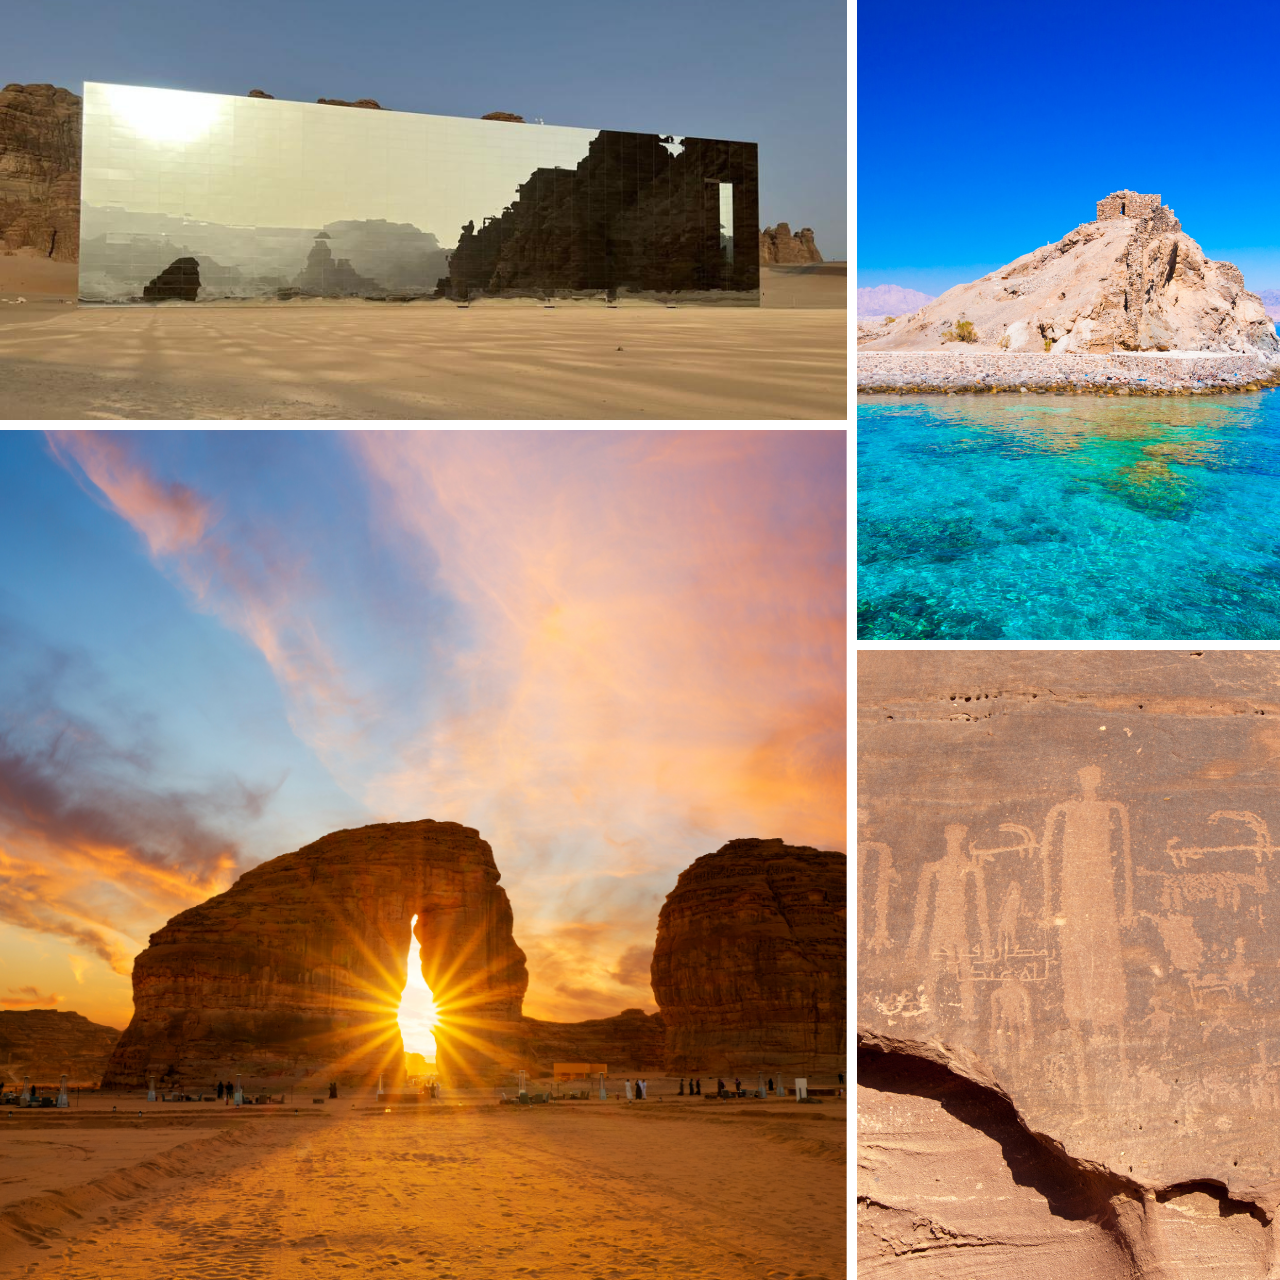 وزير السياحة: أبواب السعودية مفتوحة للعالم للتعرف على تراثها وثقافتها 